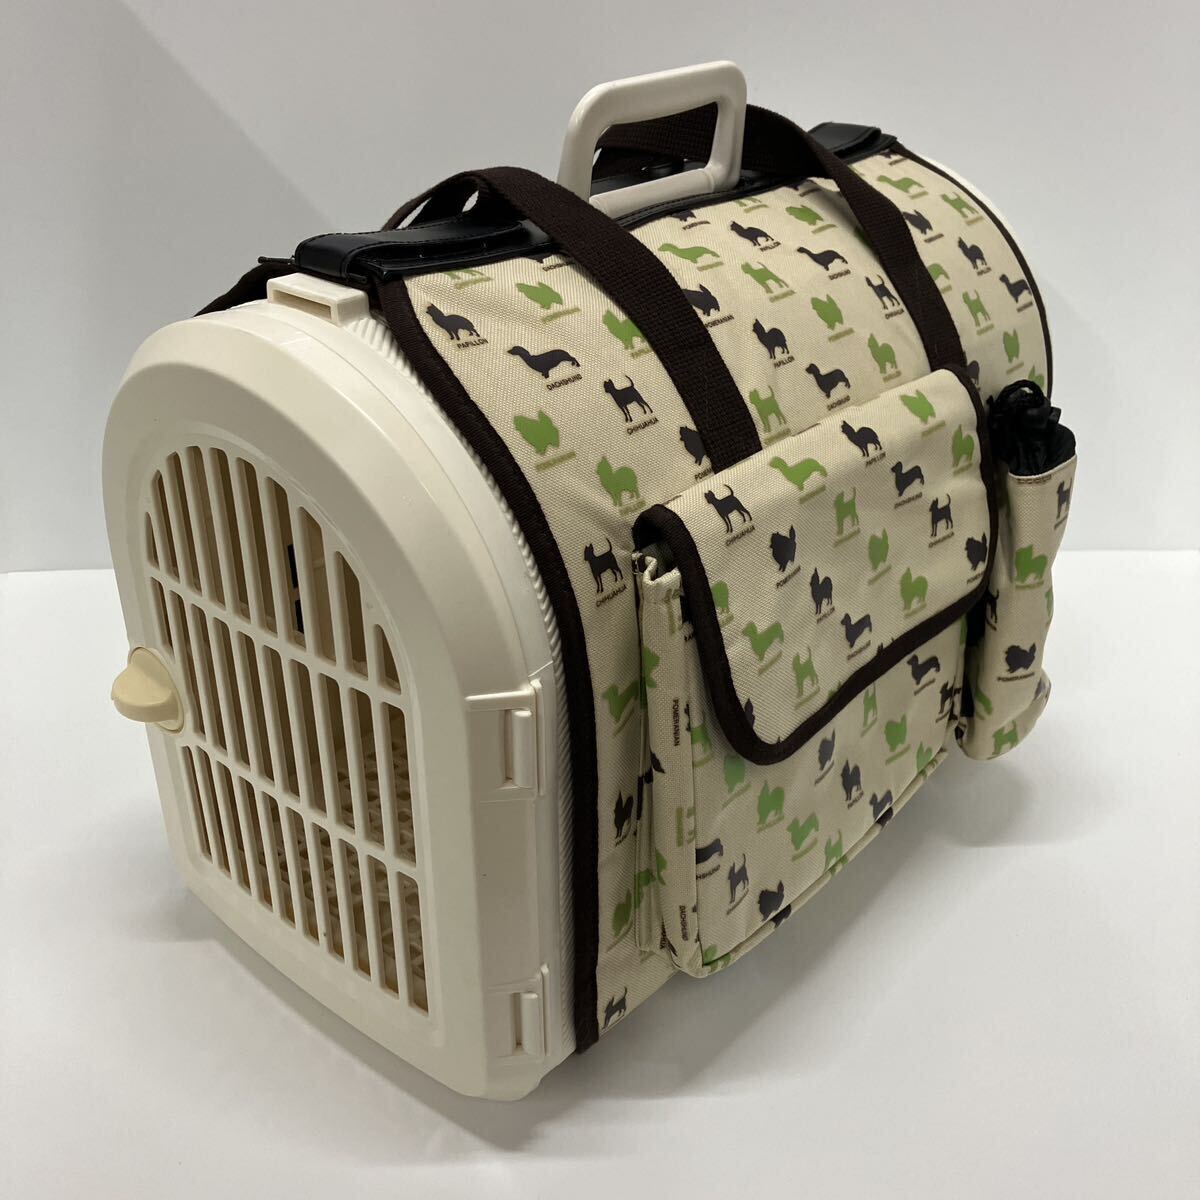 小型犬用 犬 猫 ペット ラタン調 専用カバー付き バスケットキャリー キャリーケース トラベルキャリー 旅行 BL-460 アイリスオーヤマ の画像1